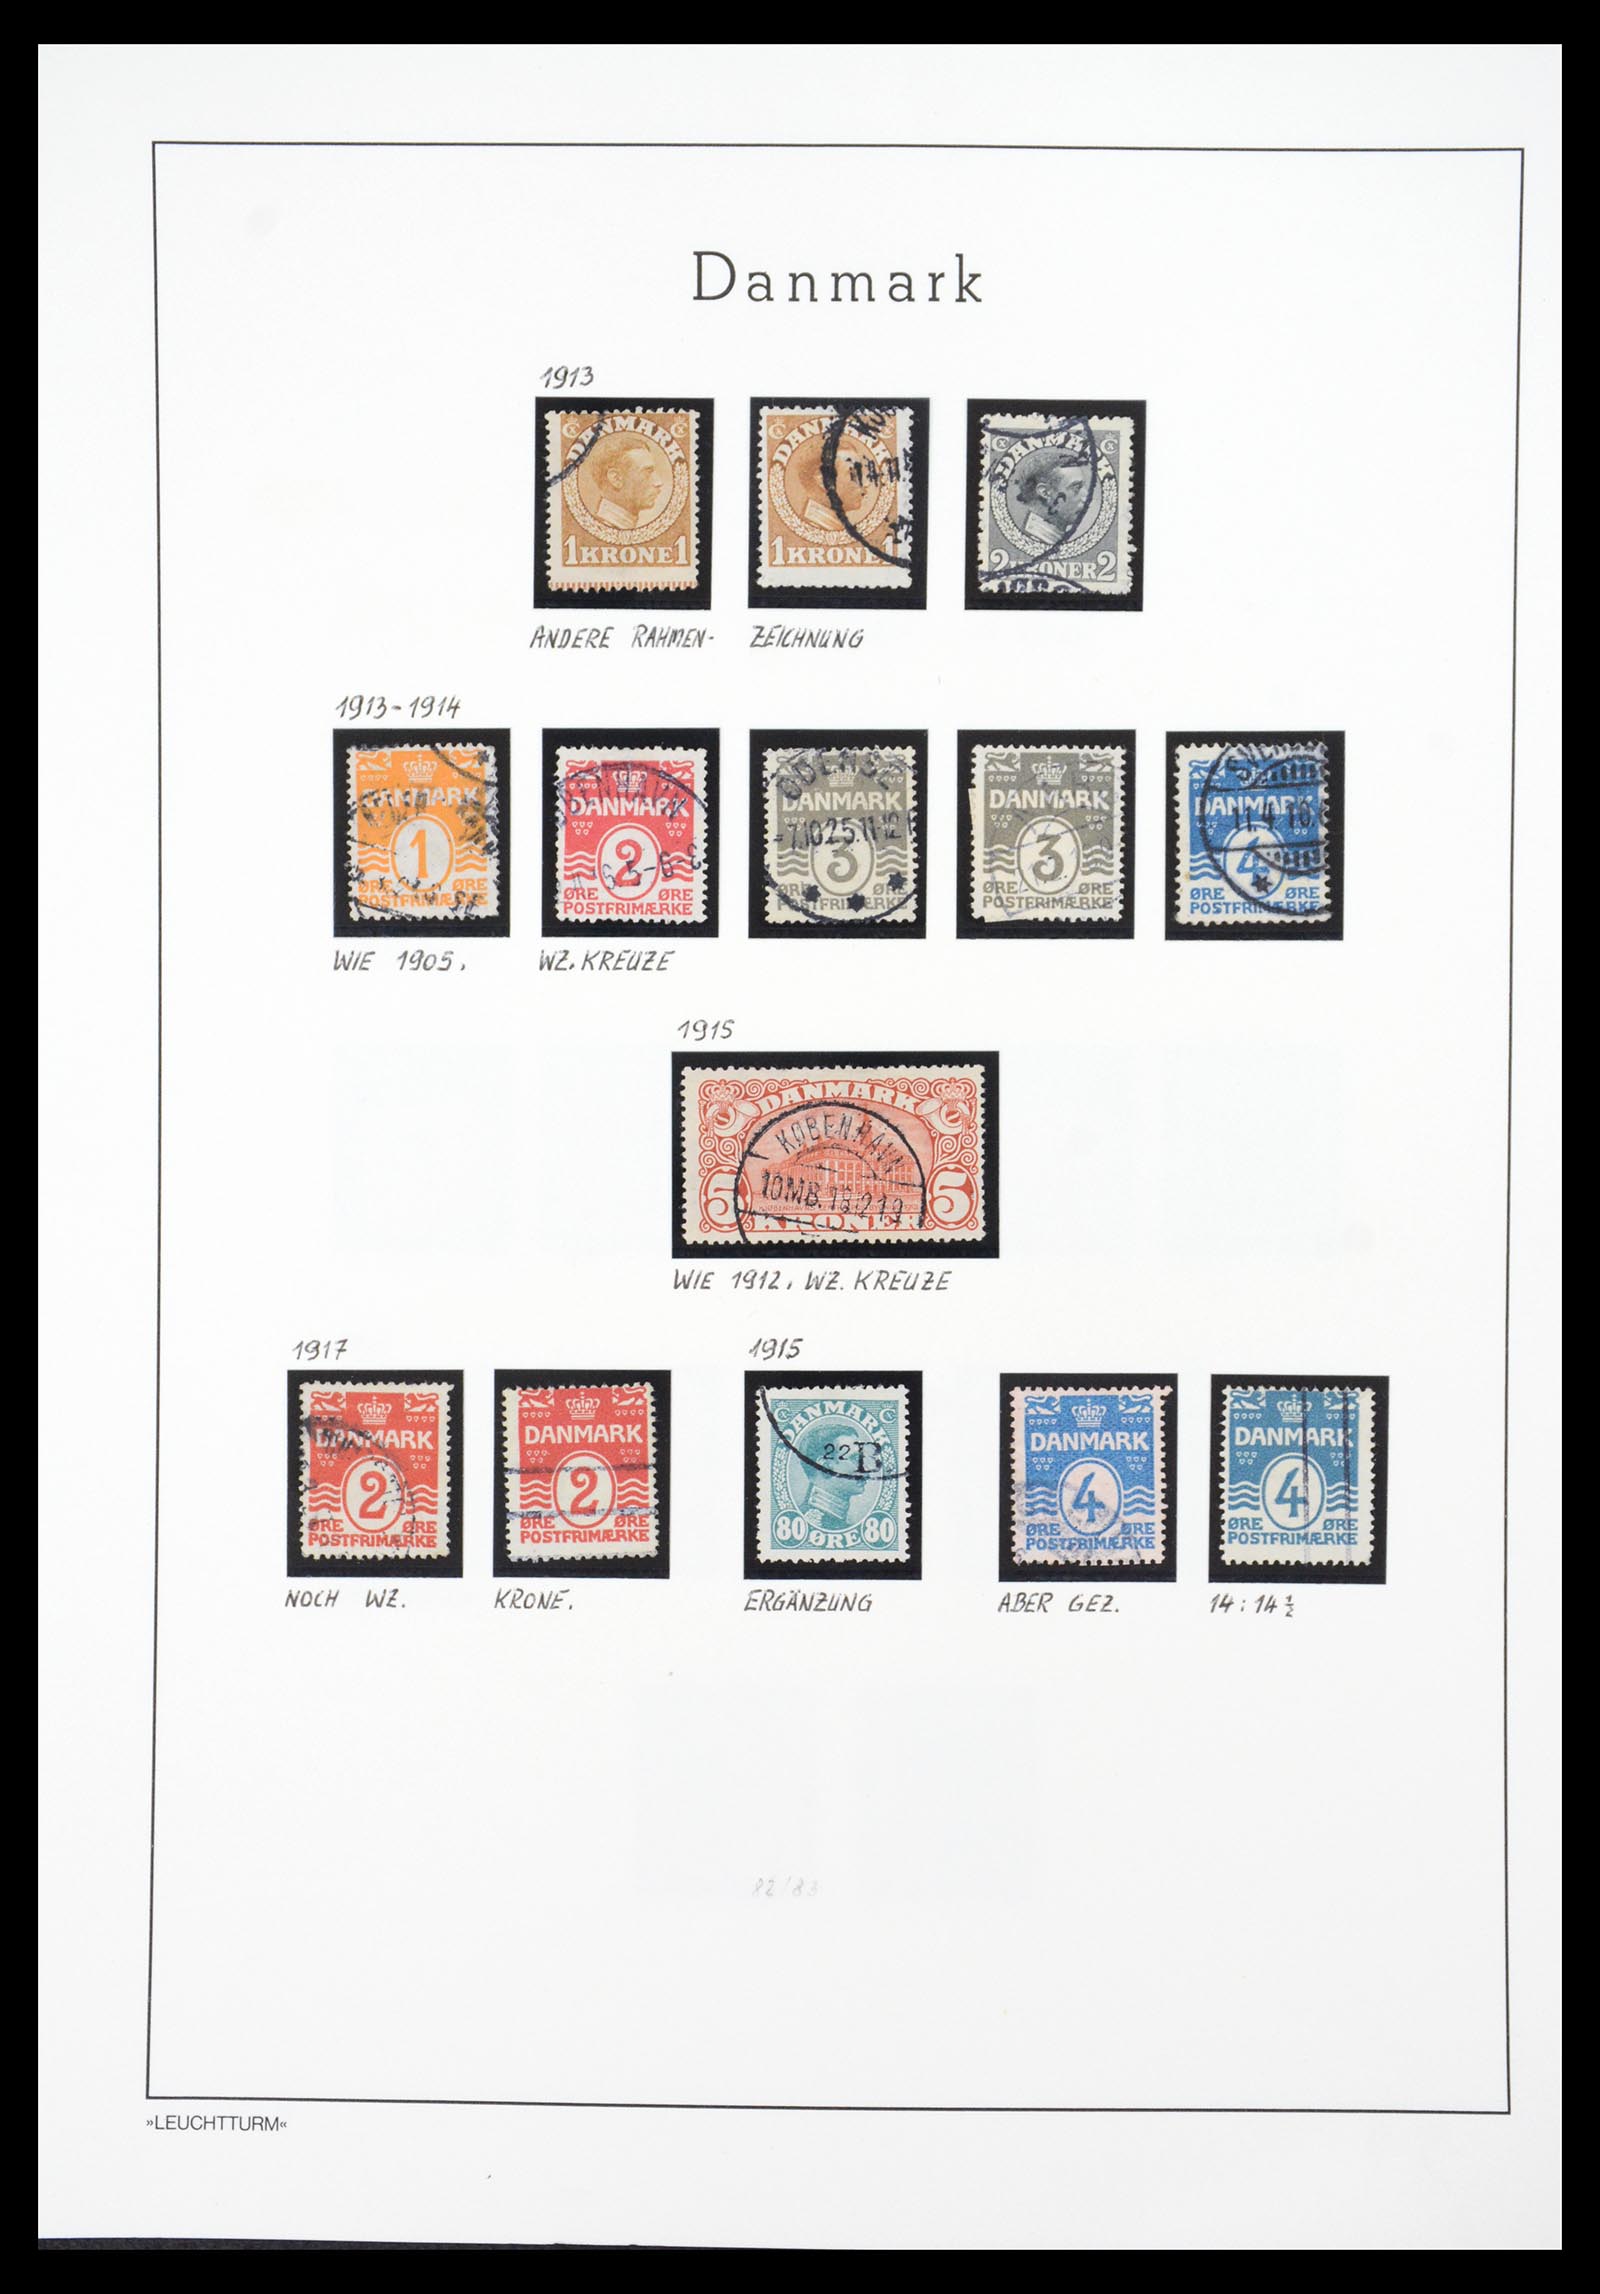 36612 022 - Stamp collection 36612 Denemarken 1851-1990.